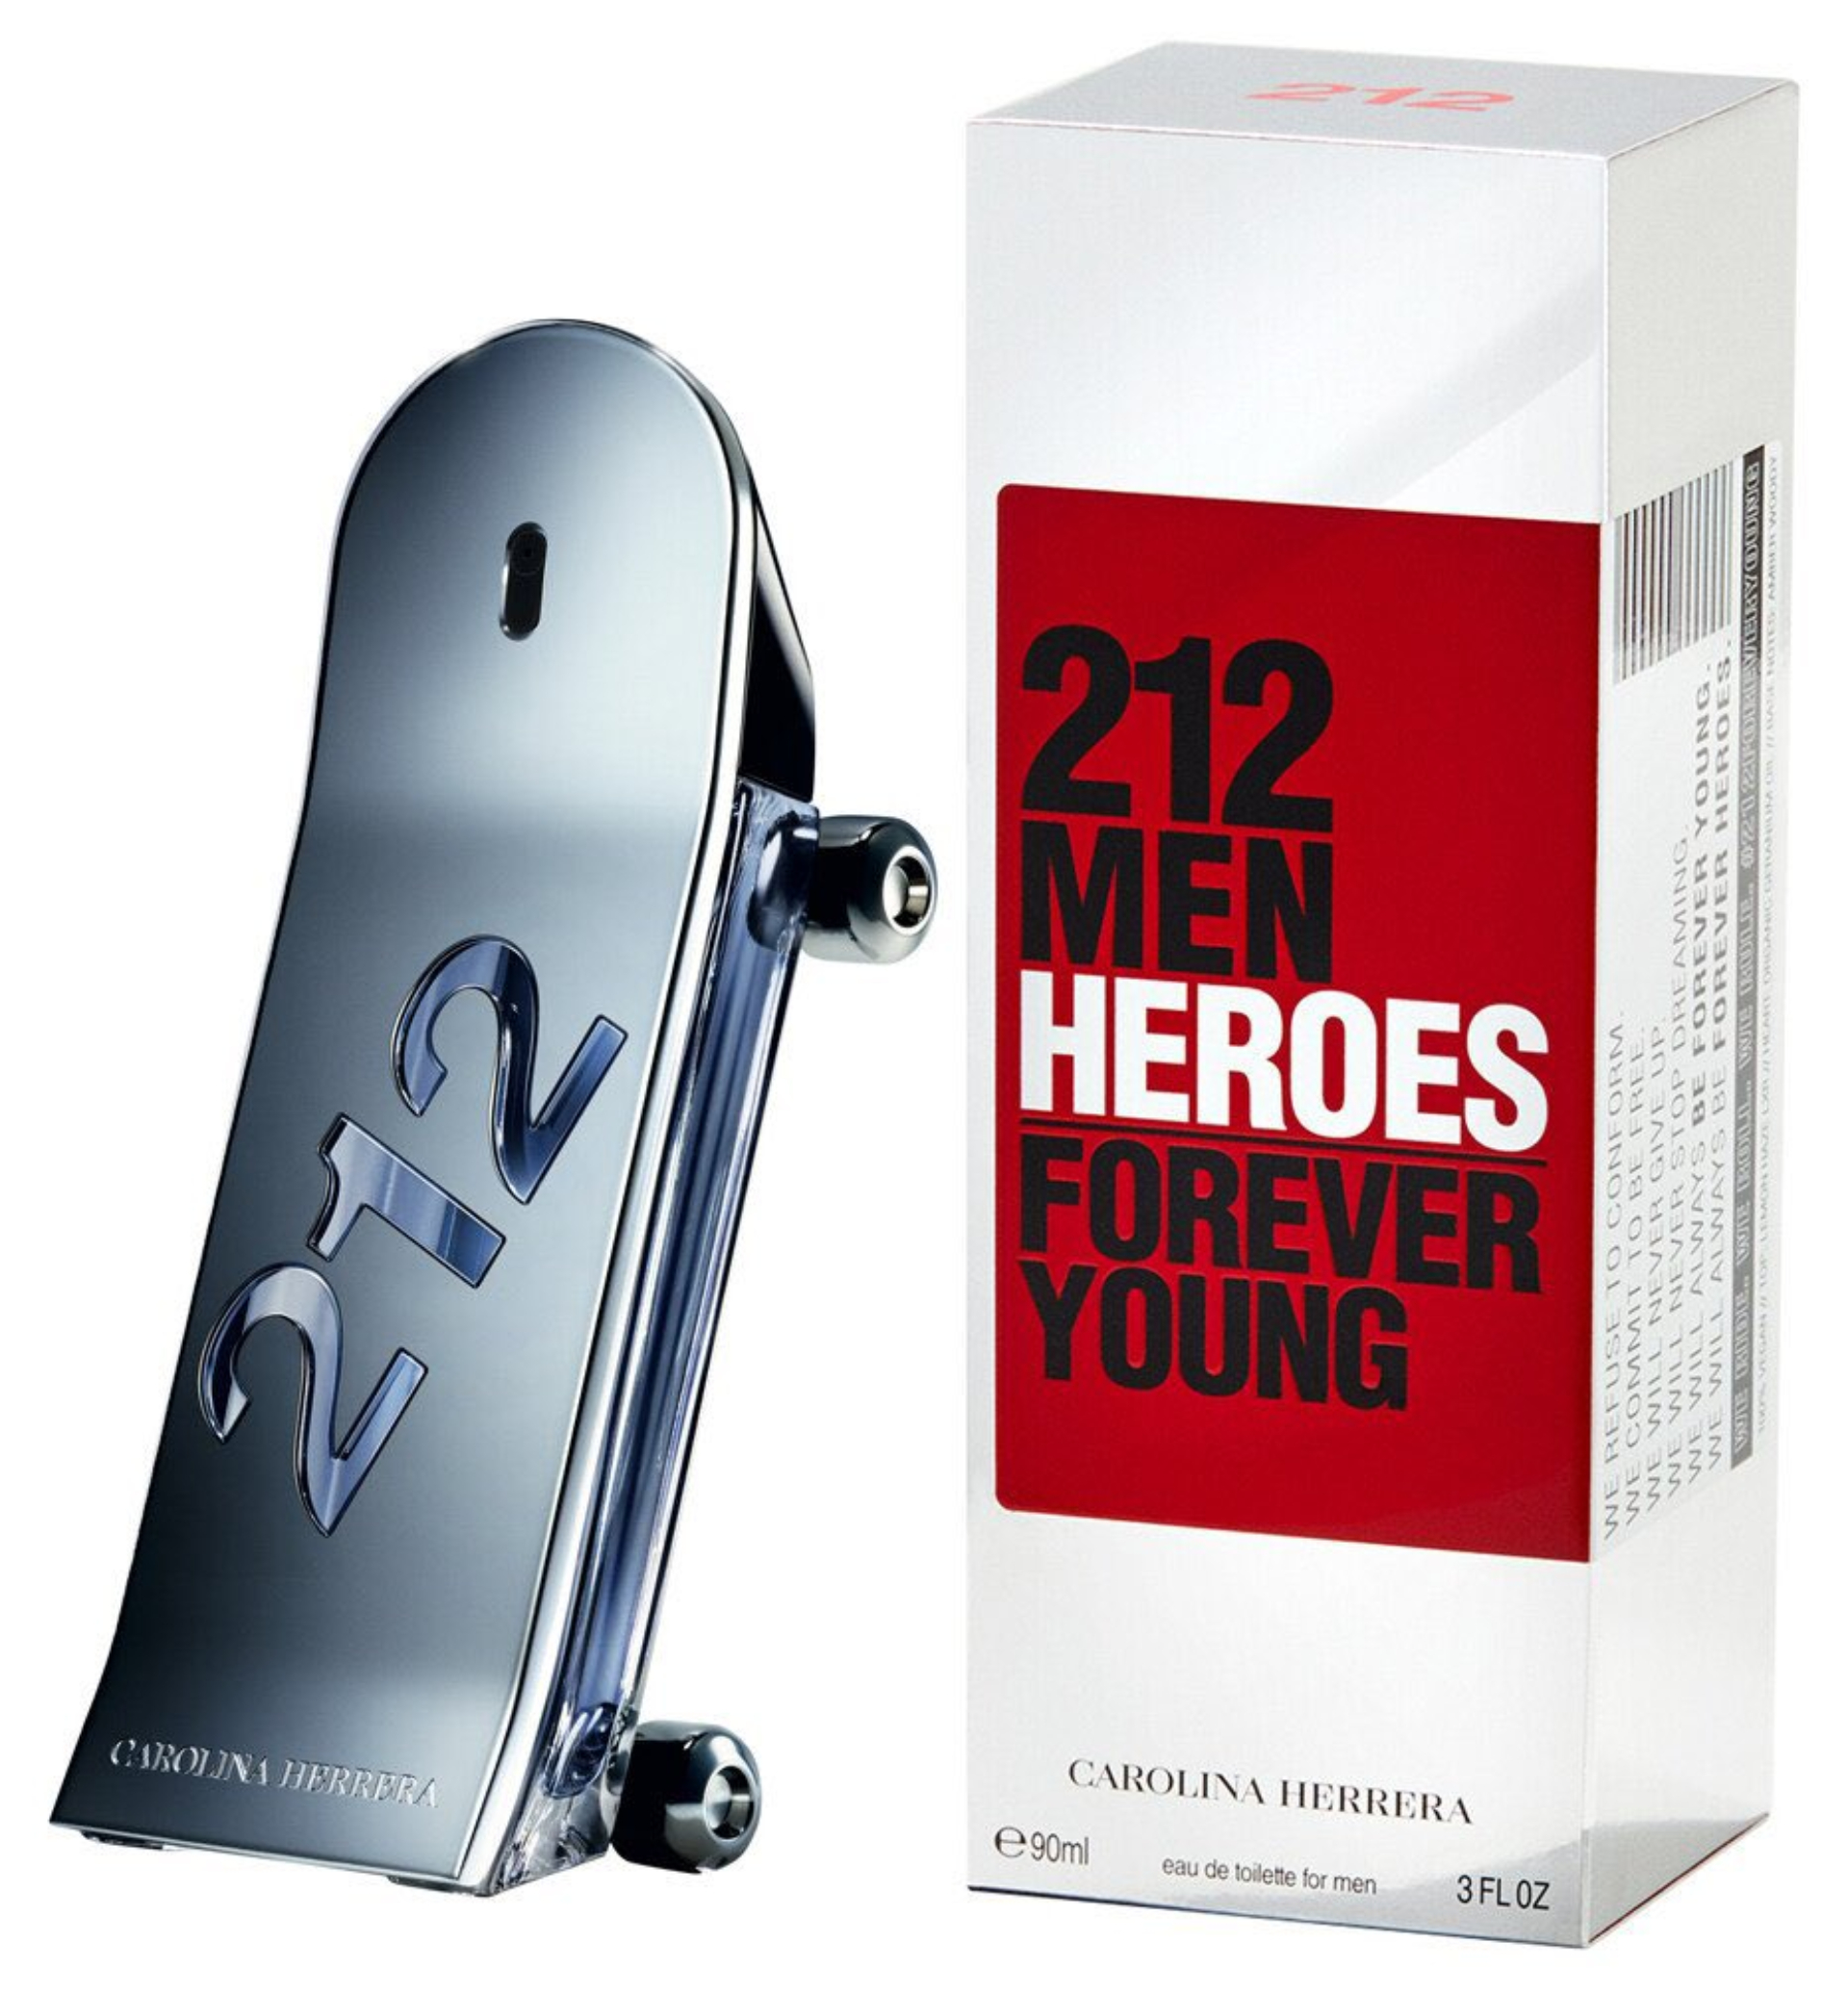 Very Good Girl y 212 Heroes, los nuevos perfumes de Carolina Herrera